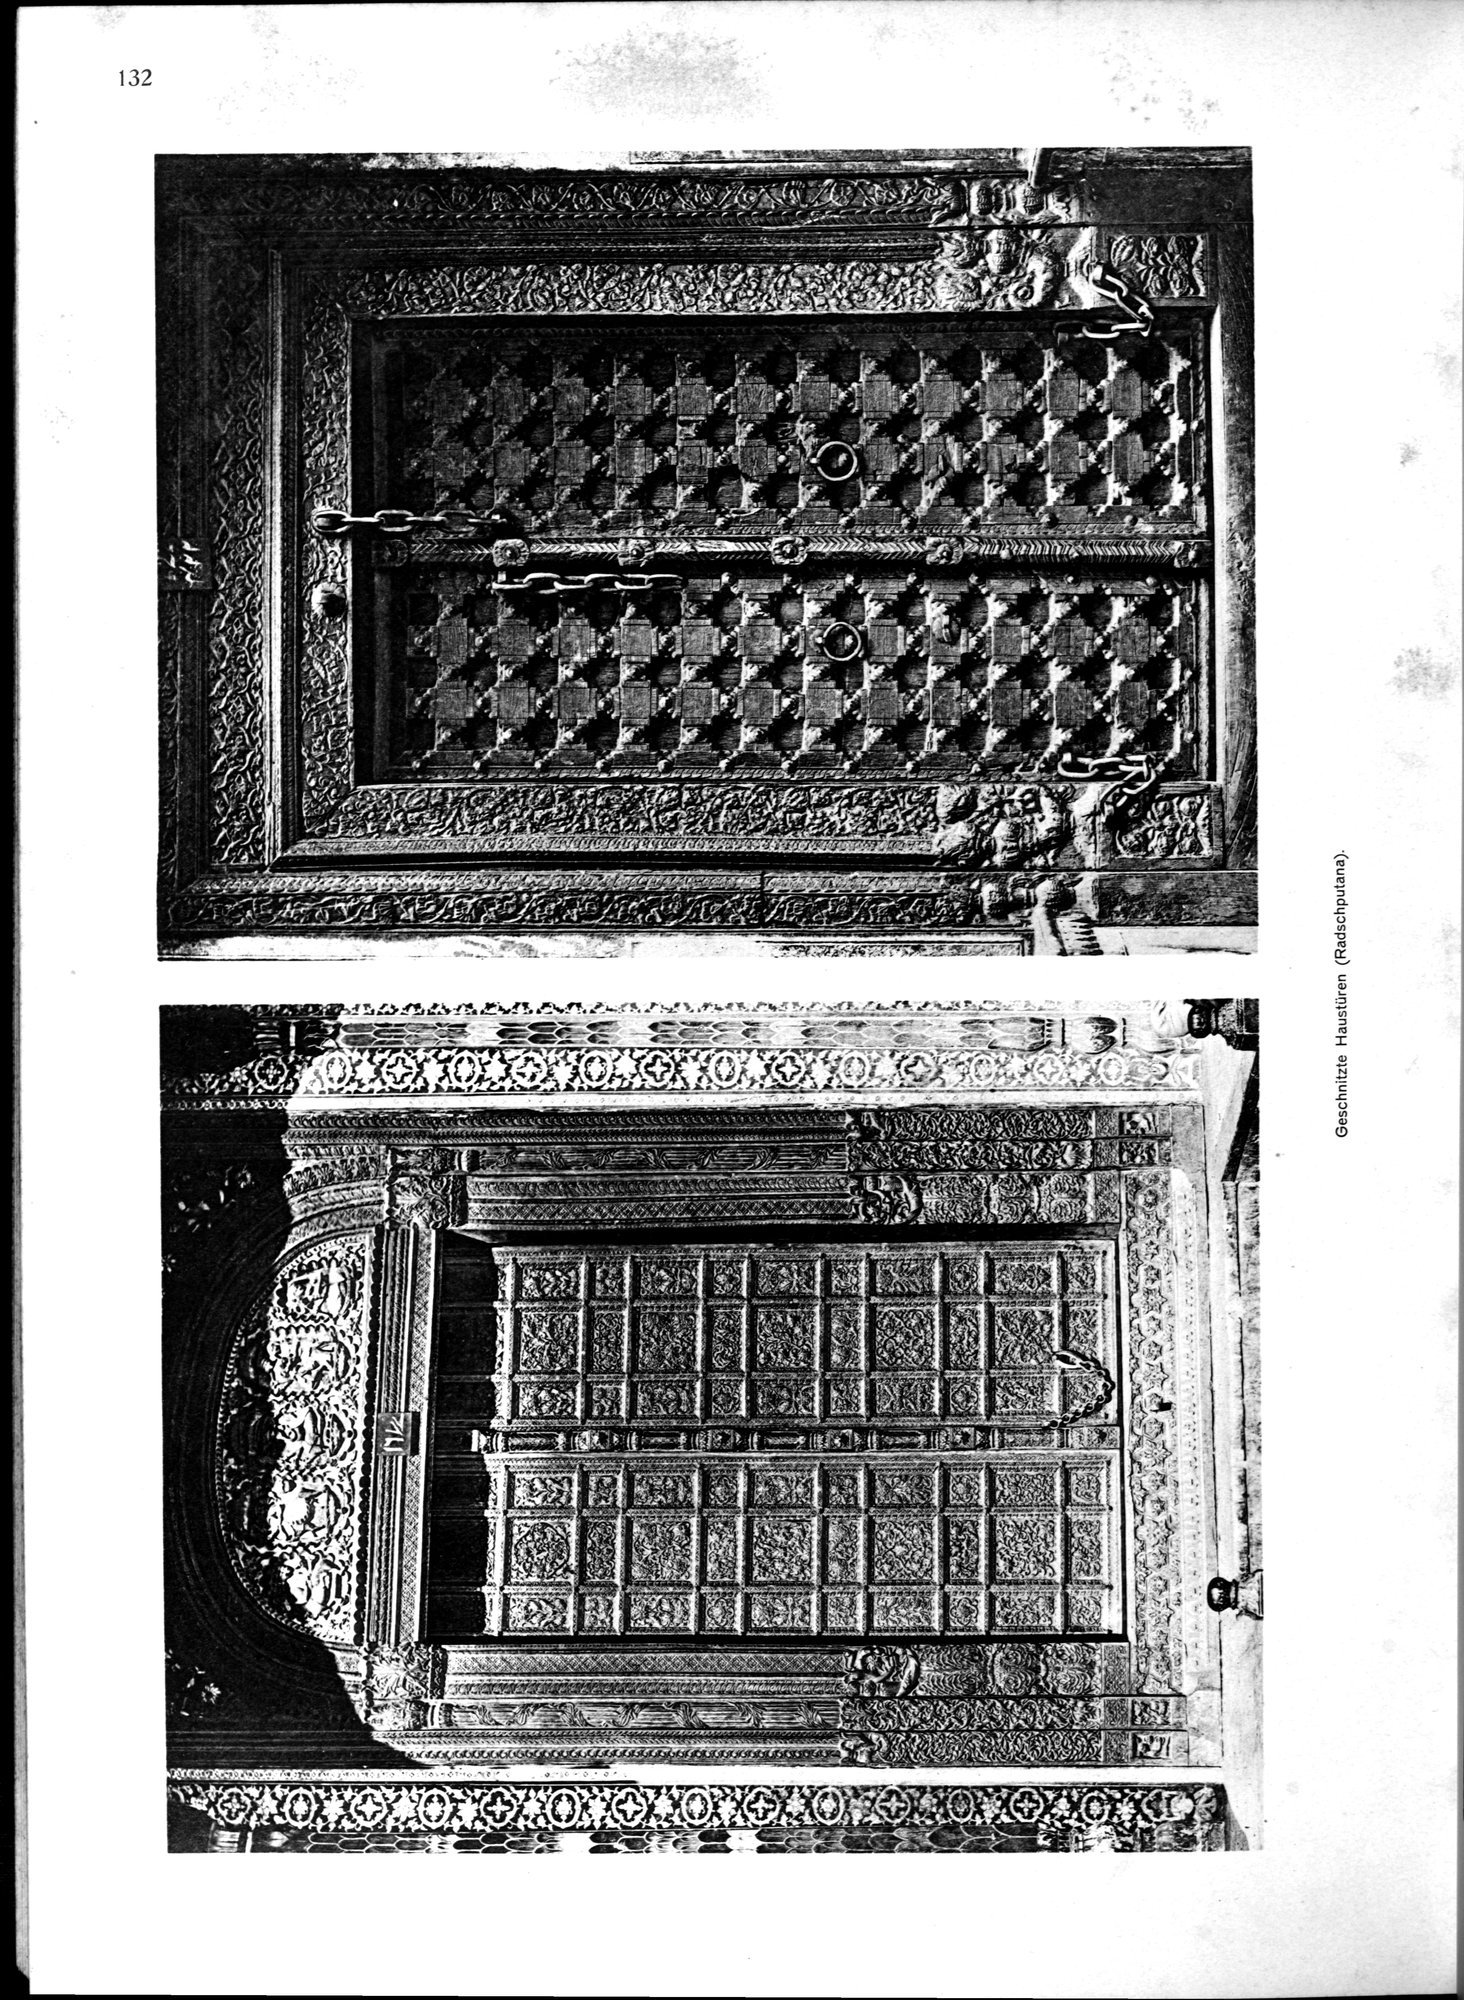 Indische Palaste und Wohnhauser : vol.1 / Page 248 (Grayscale High Resolution Image)